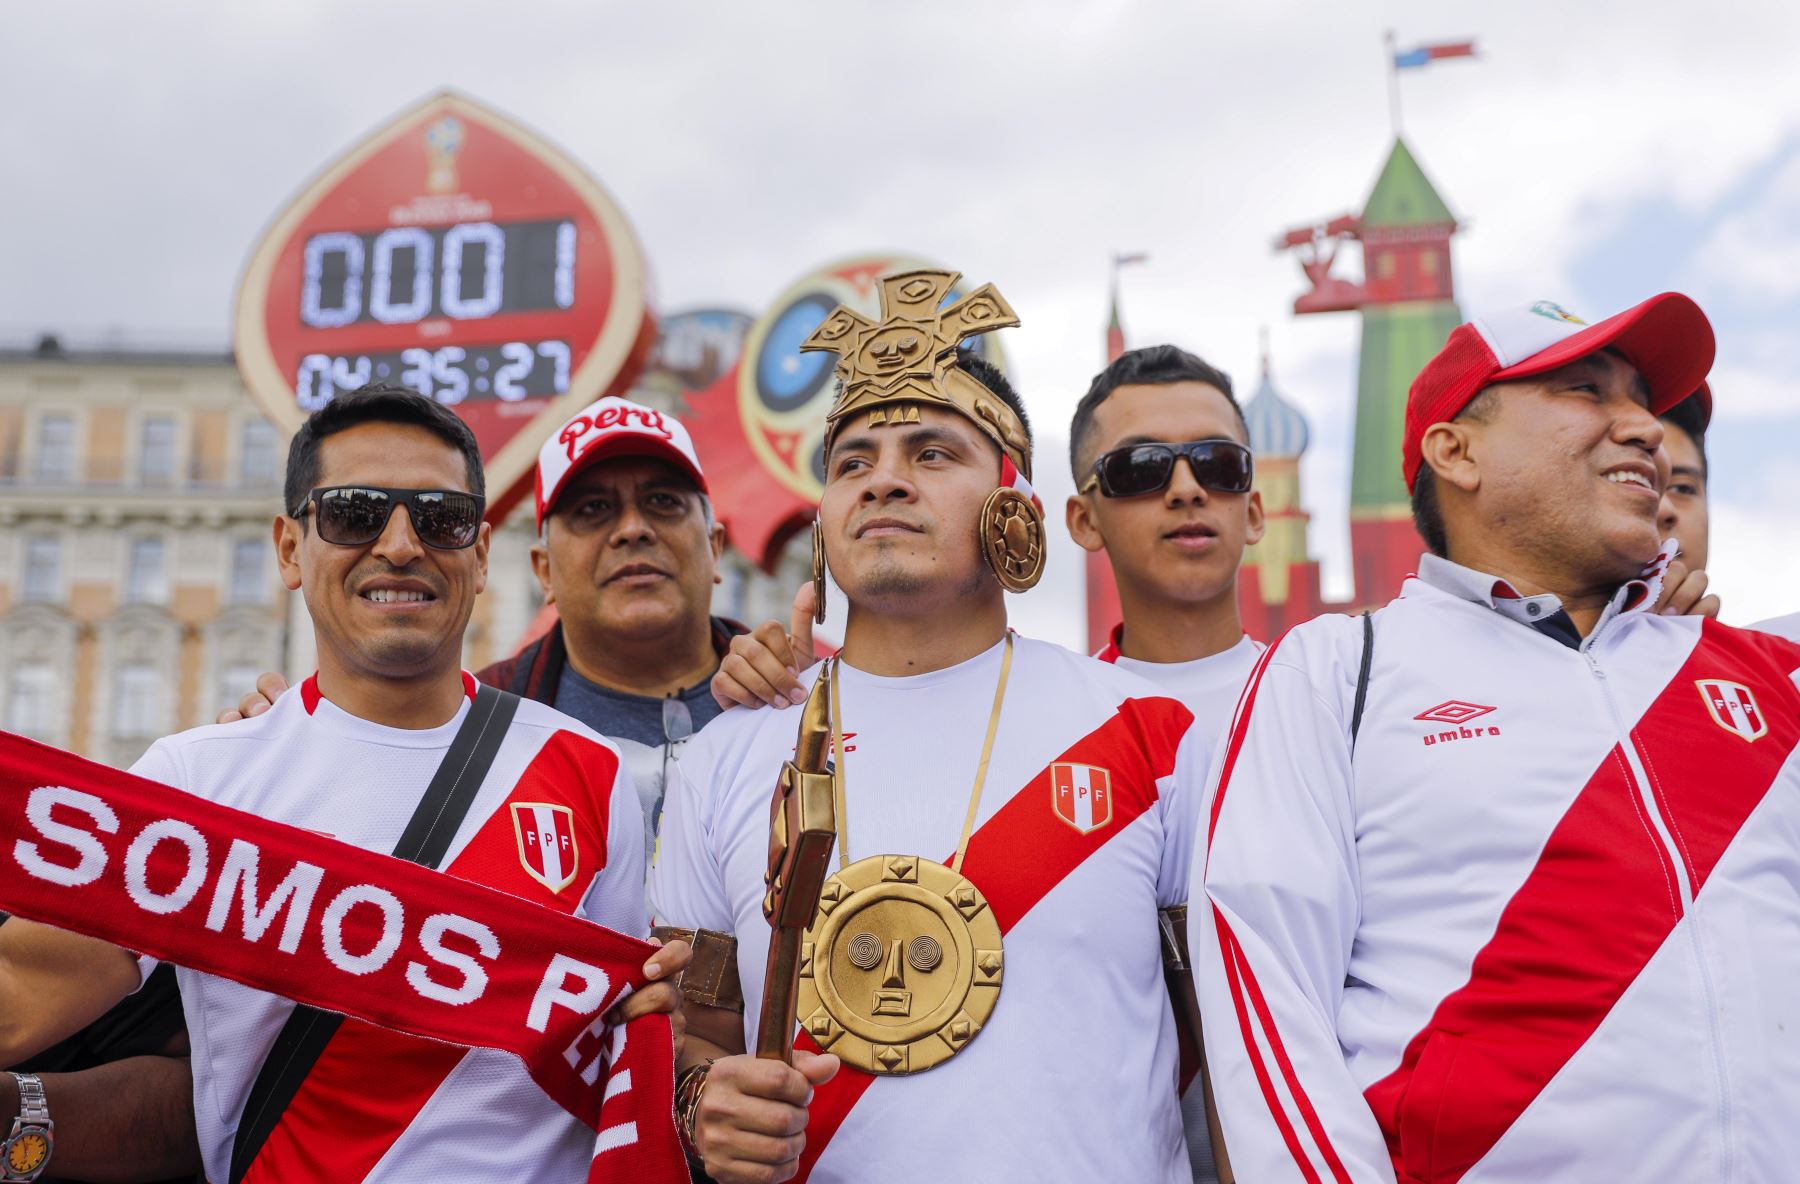 Hinchas del fútbol peruano se reúnen cerca de la Plaza Roja en Moscú, Rusia.  Foto: EFE